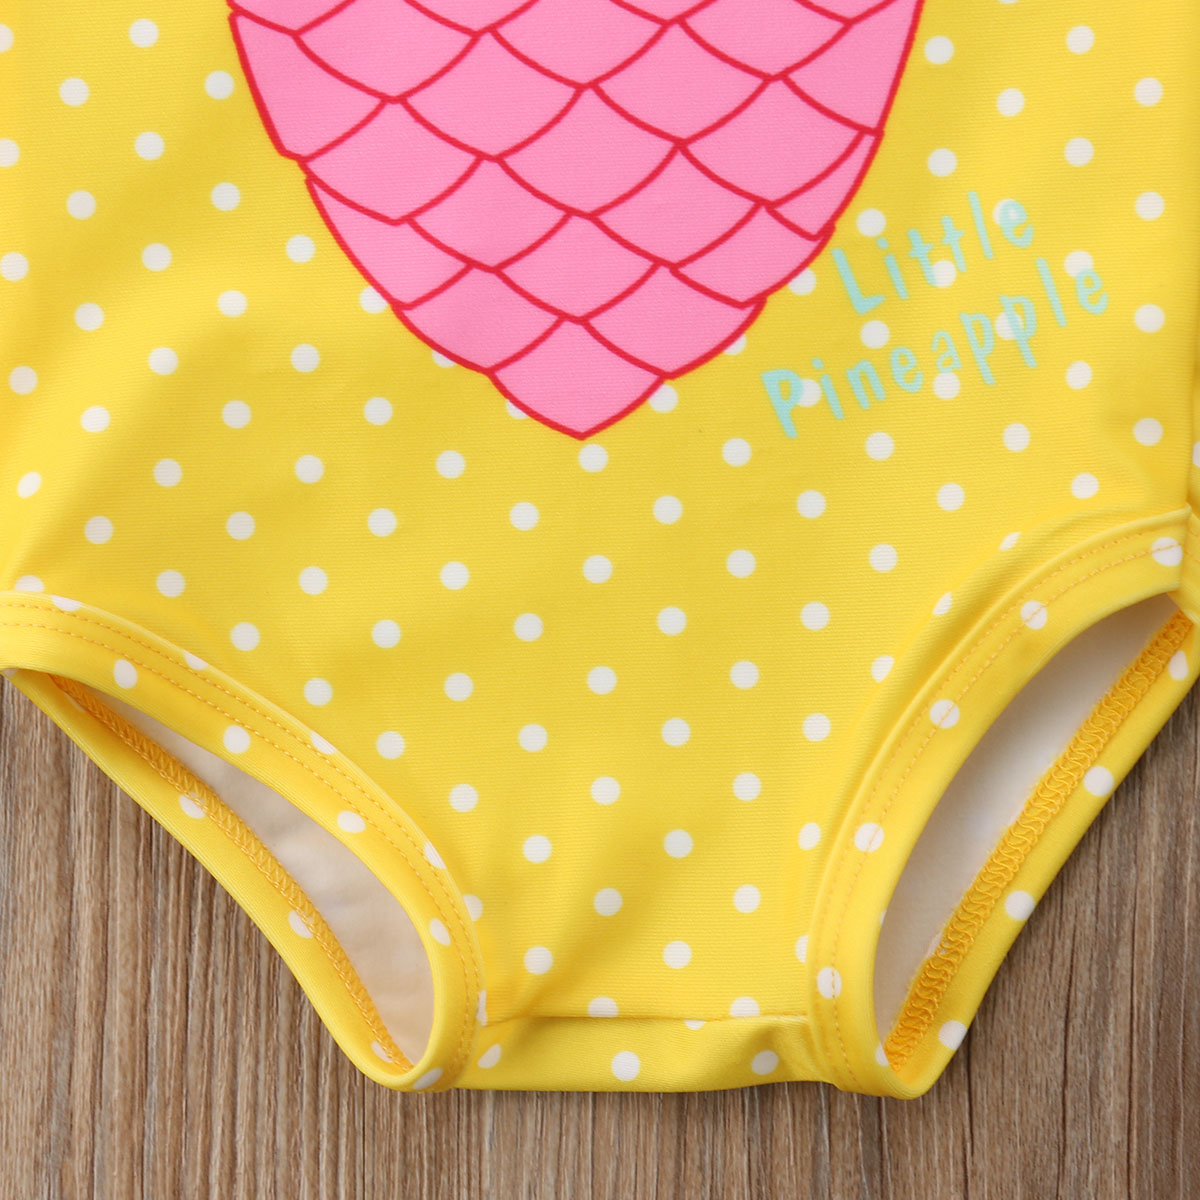 Toddler kid baby piger ananas print badetøj toddler badedragt beachwear baby piger tøj børn badedragt sommer